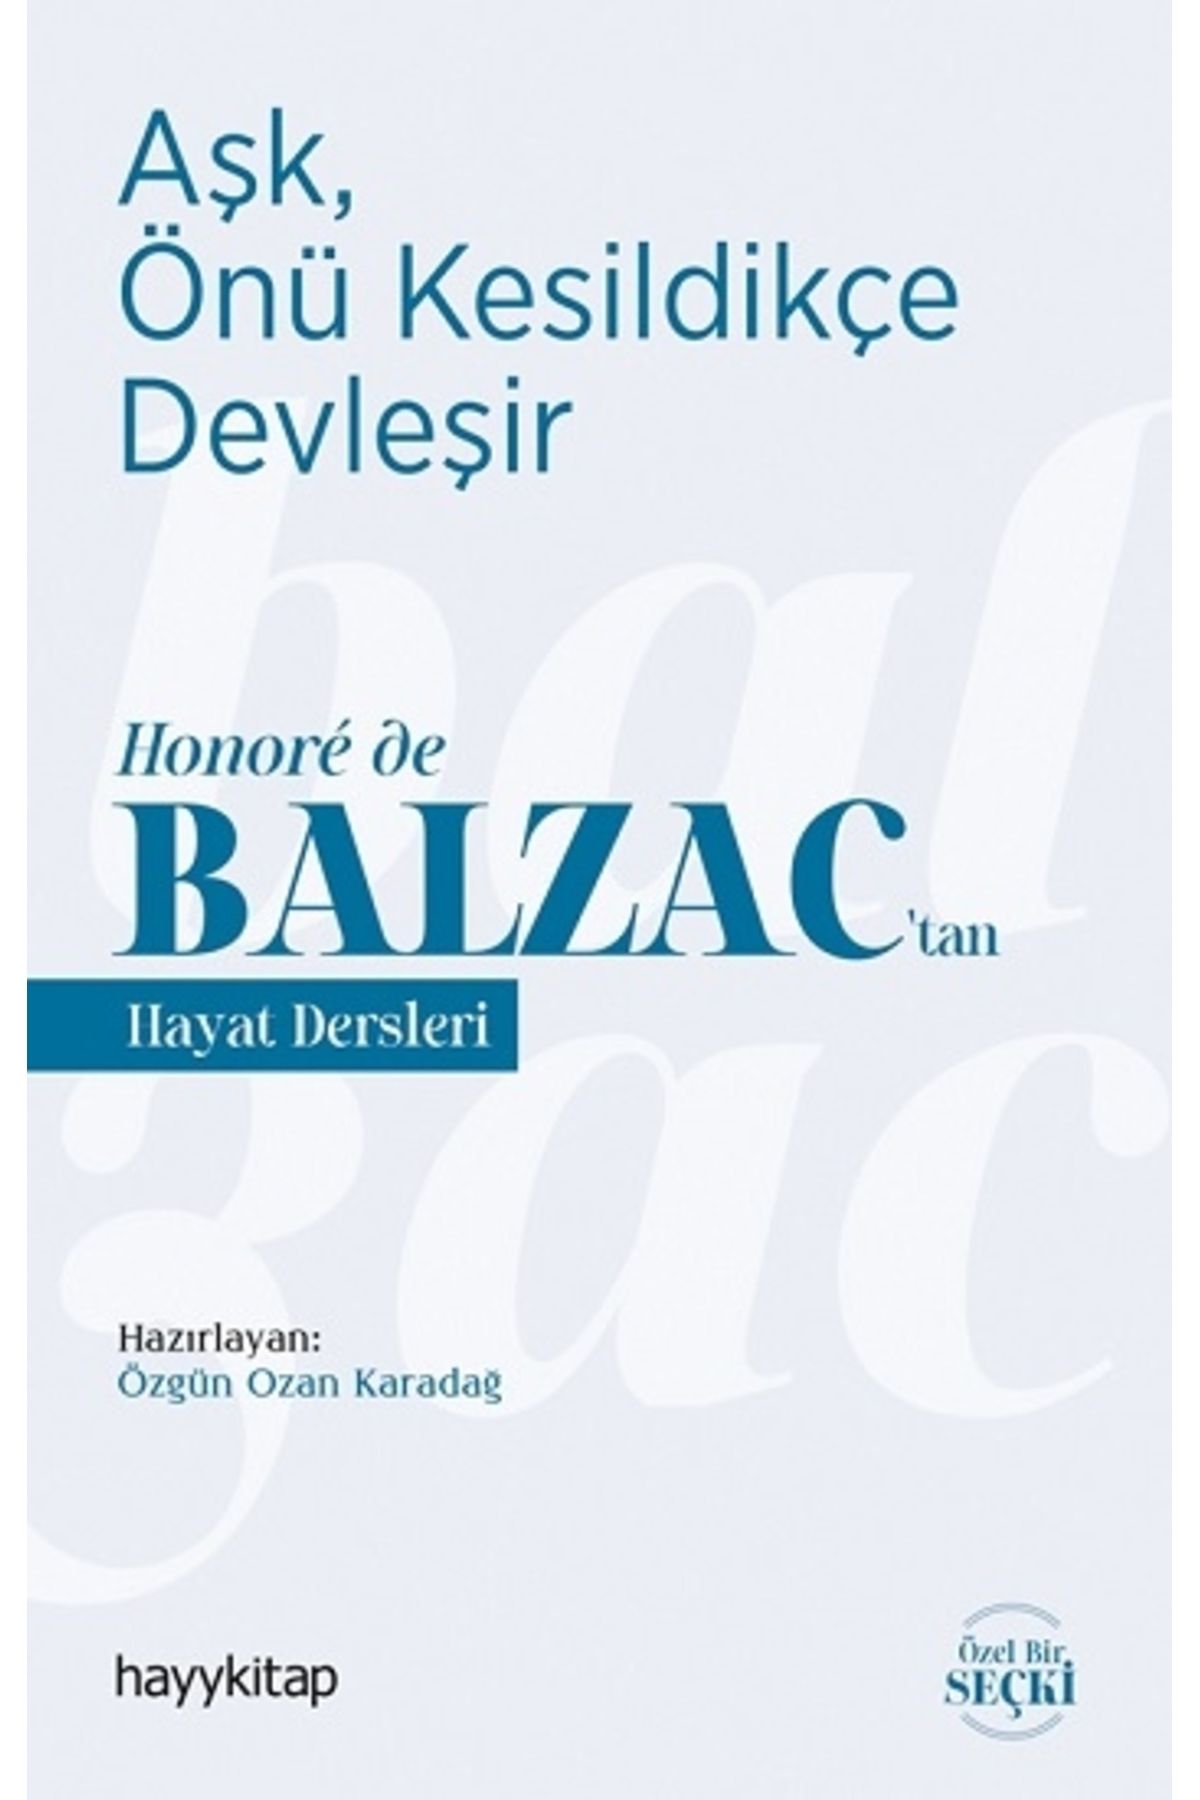 Hayykitap Aşk, Önü Kesildikçe Devleşir - Honore De Balzac’tan Hayat Dersleri